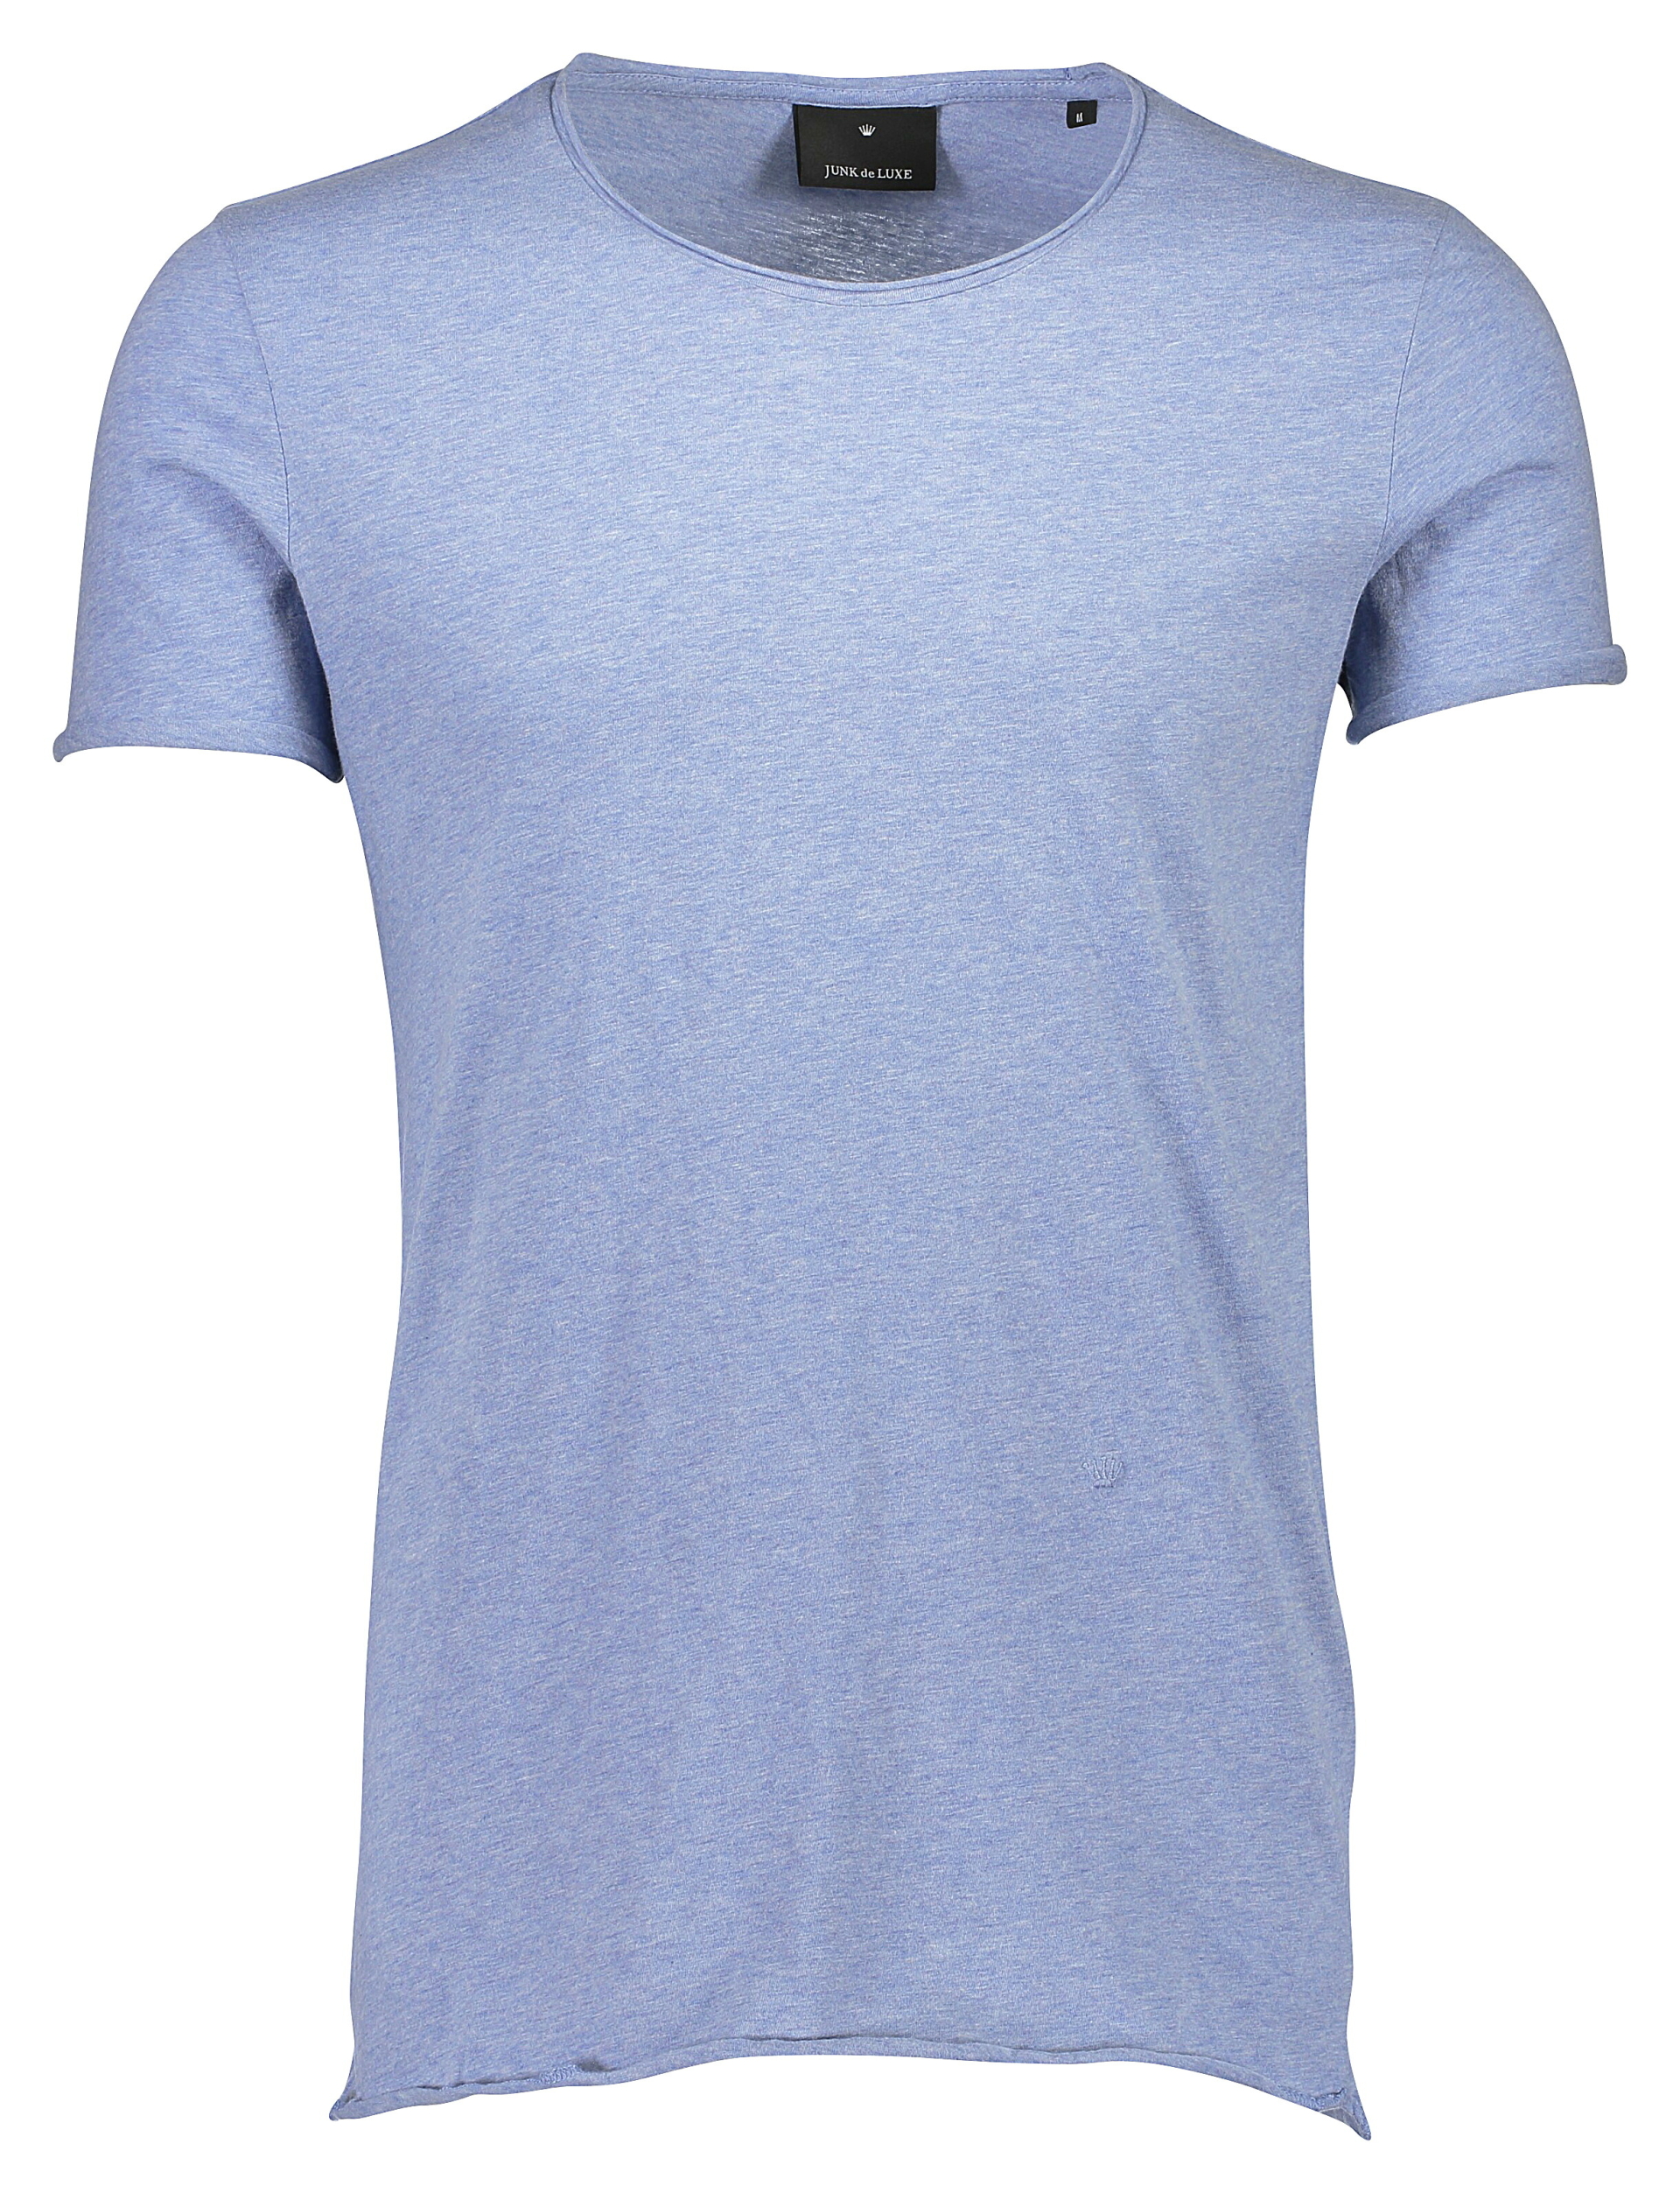 Junk de Luxe T-shirt blå / blue mel